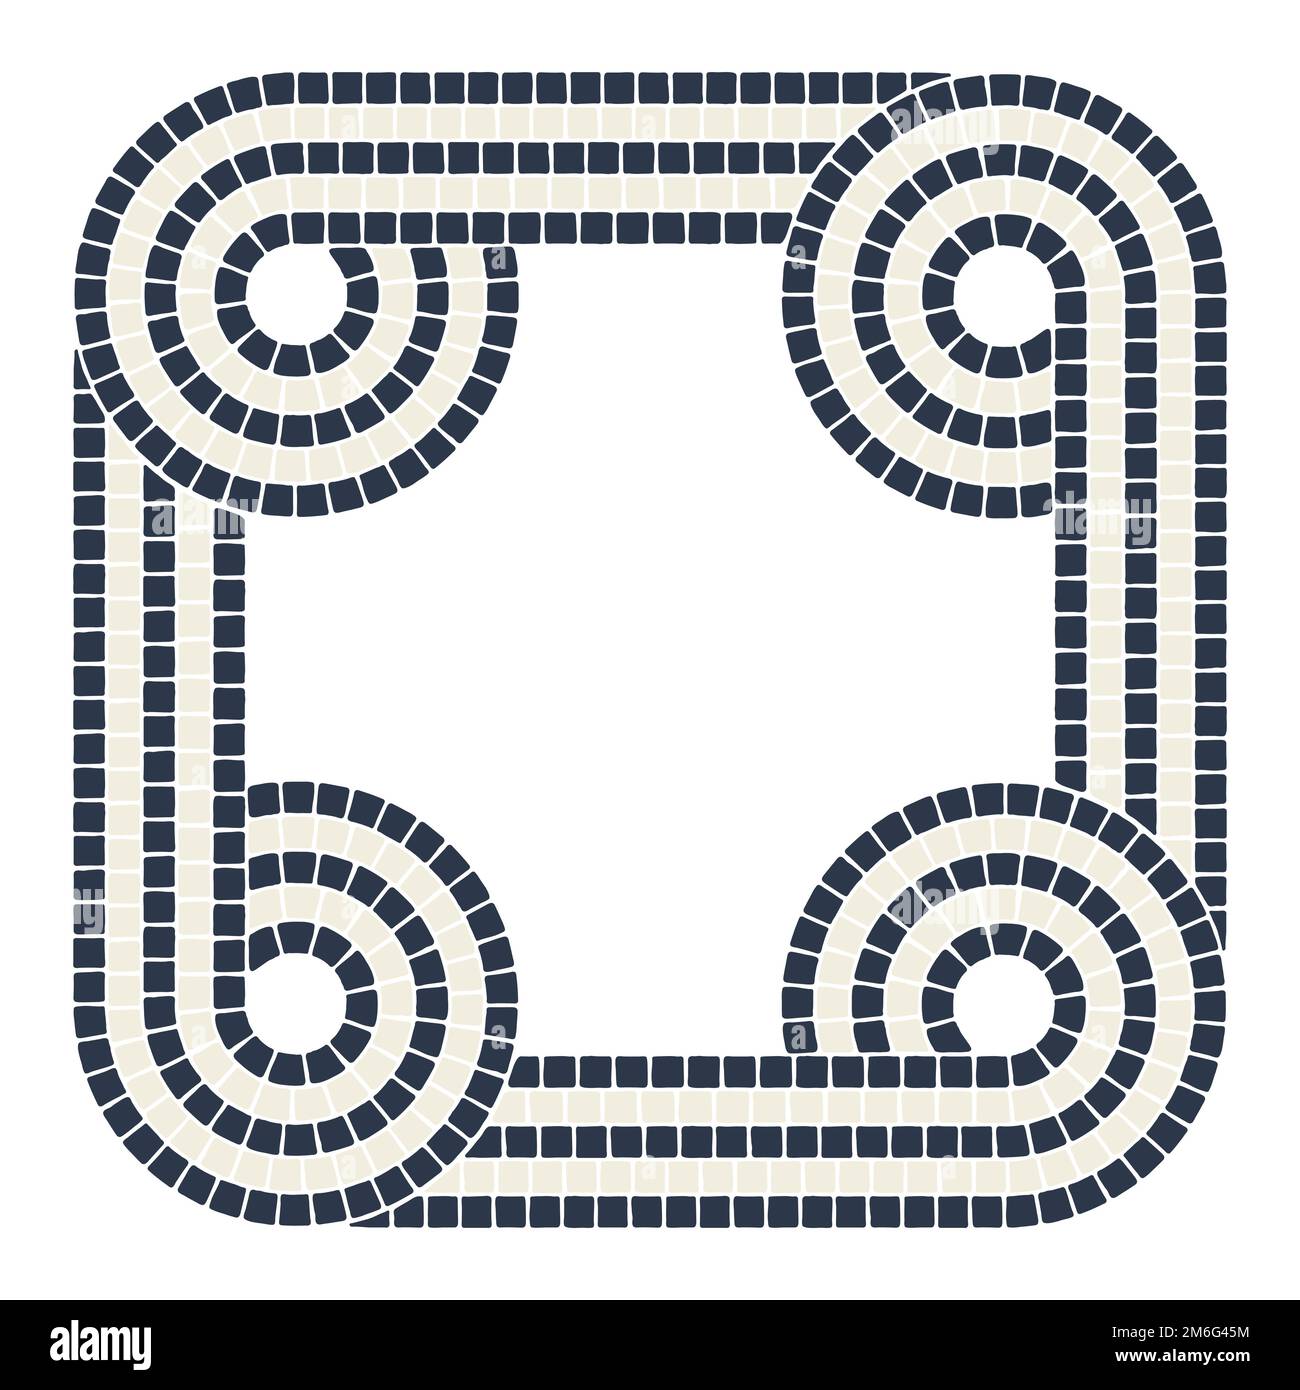 Antico elemento decorativo a mosaico intrecciato. Ornamento decorativo in pietra antica. Illustrazione Vettoriale